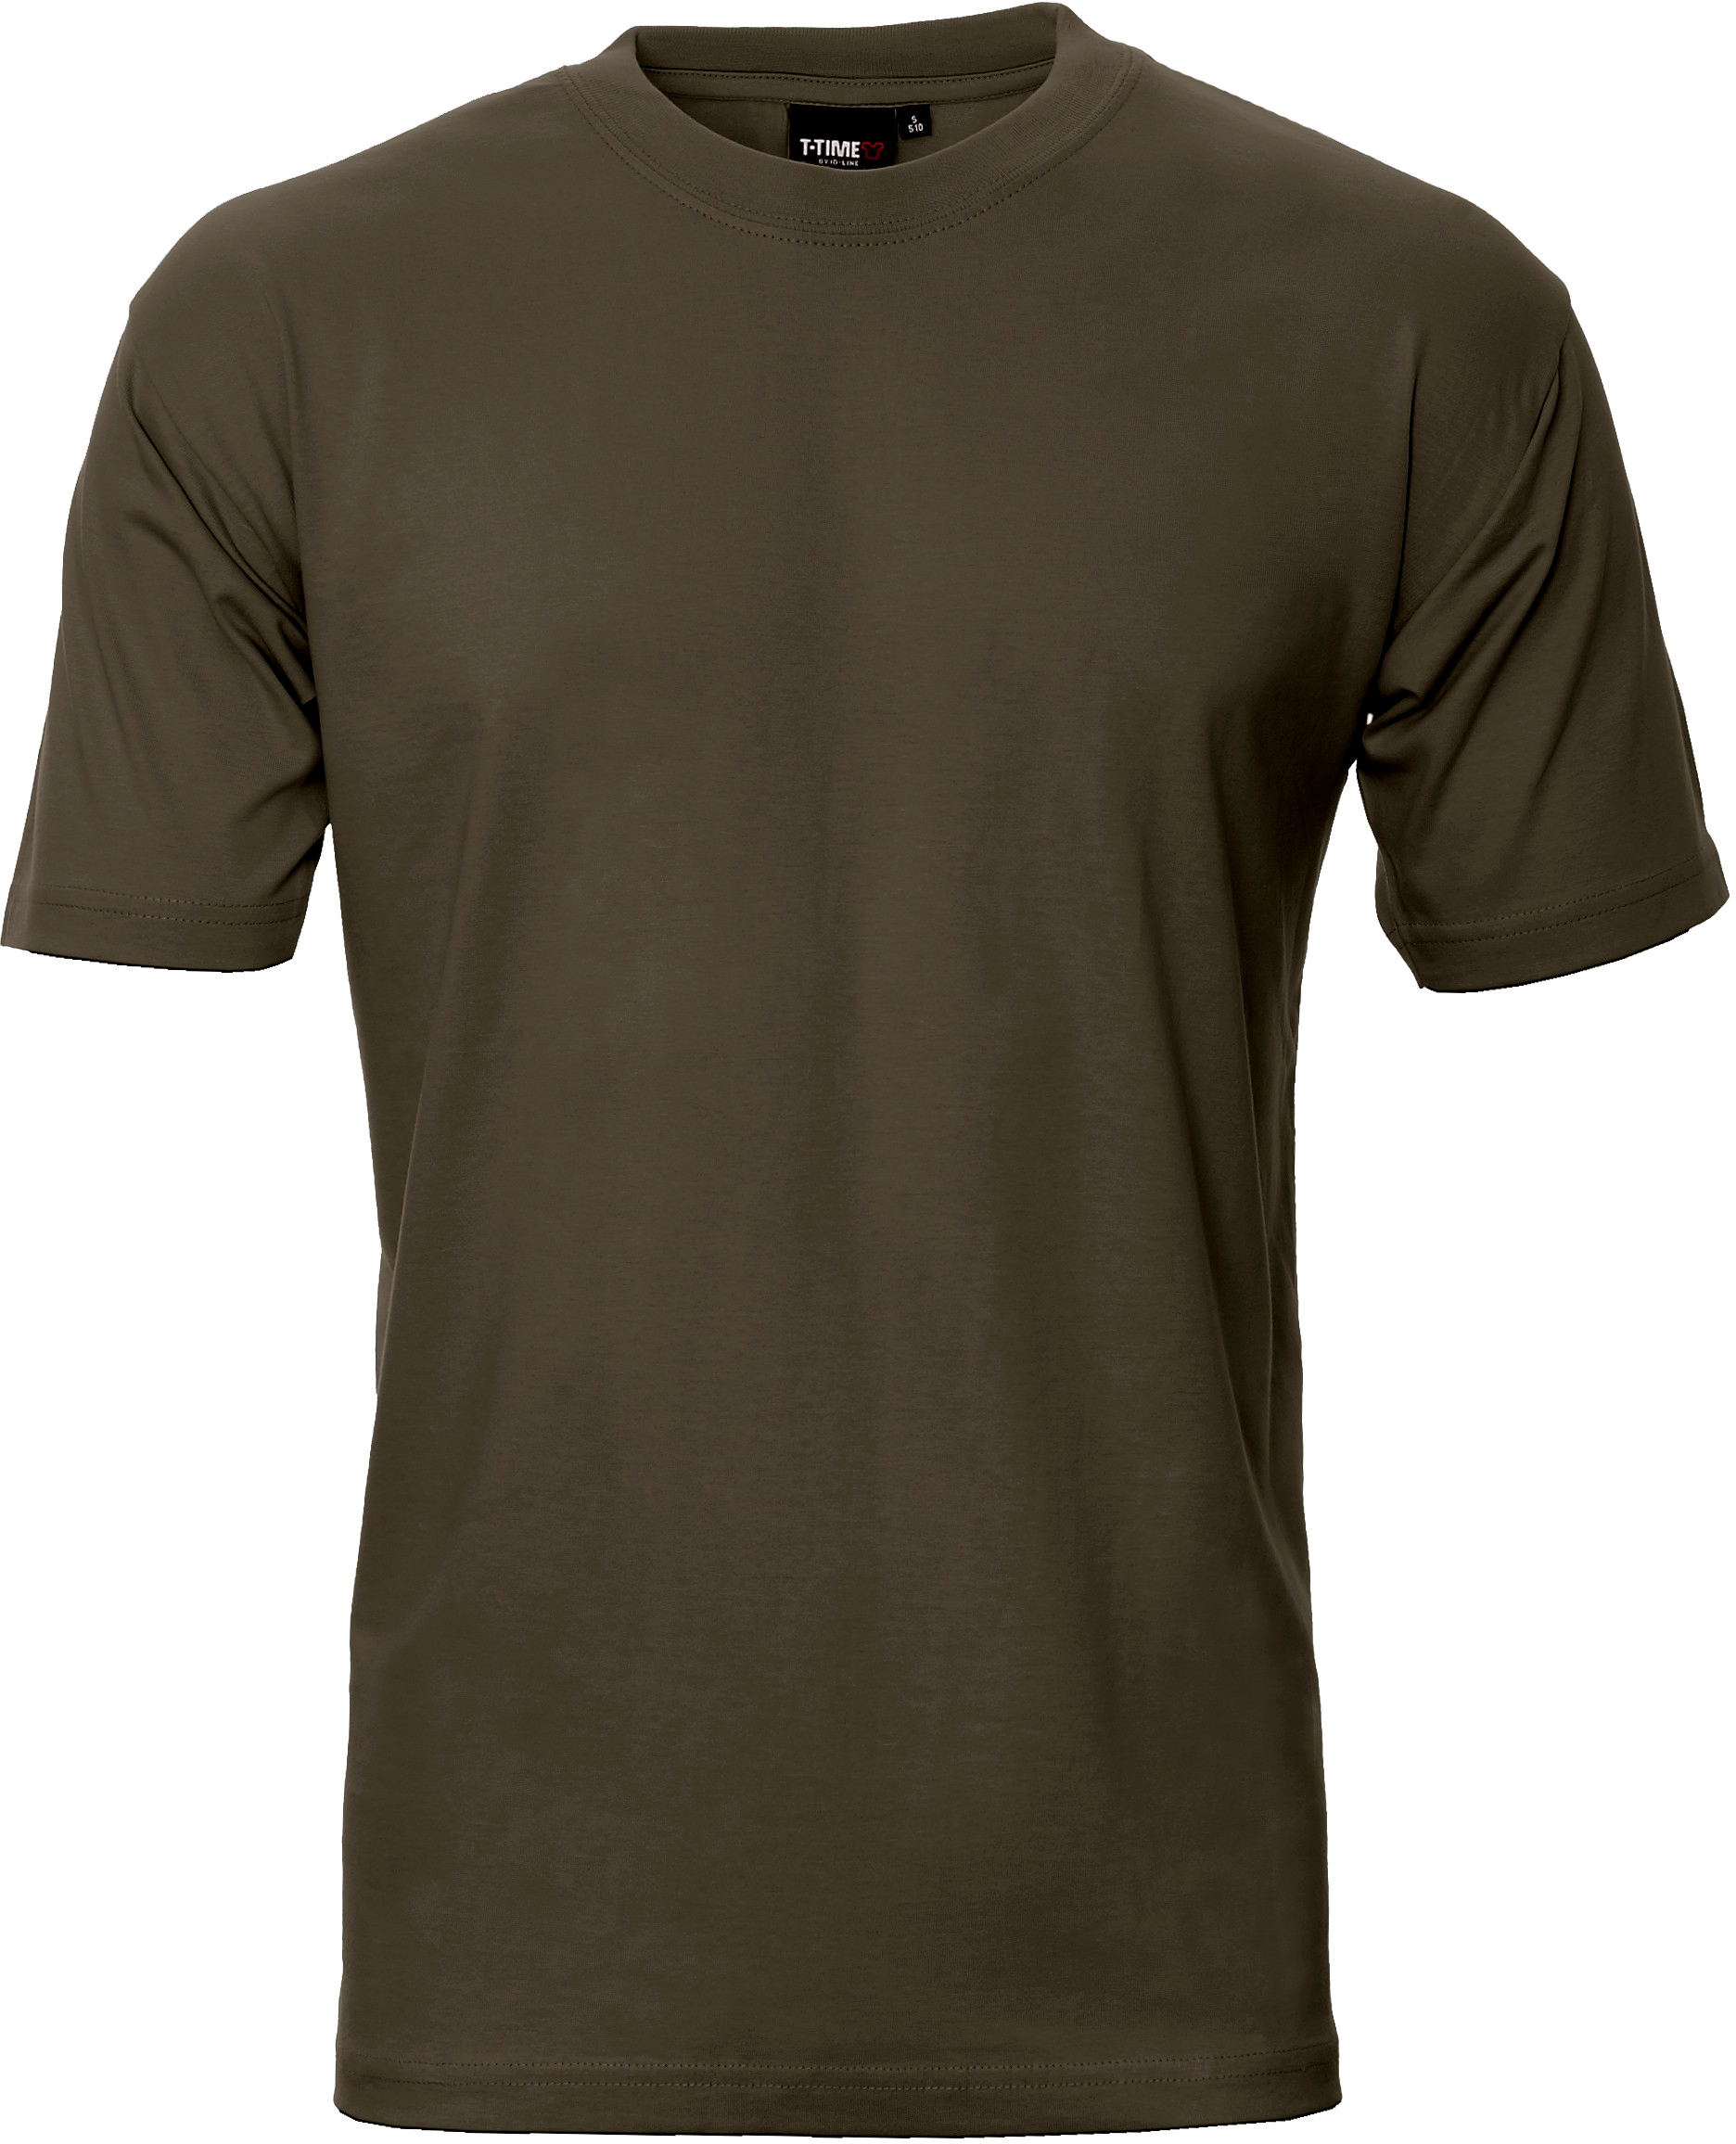 Oliven Unisex T-shirt, Basic (8150101)